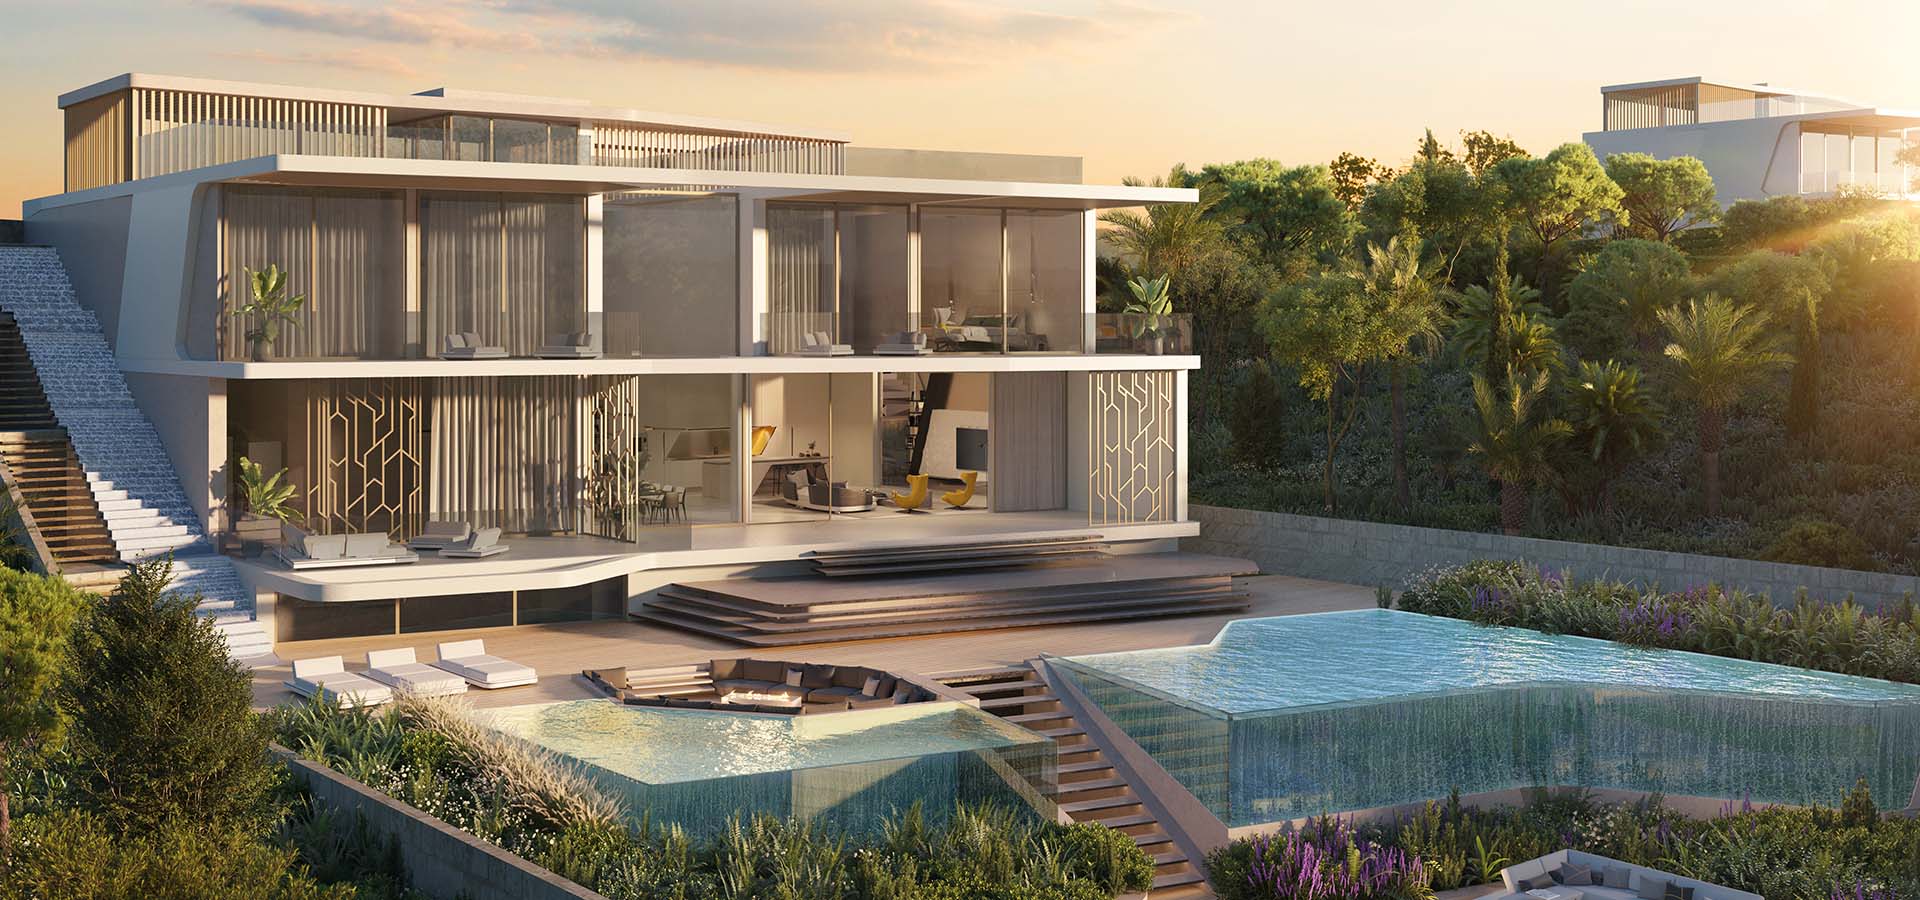 imagen 7 de Tierra Viva: casas inspiradas por Lamborghini en la Costa del Sol.